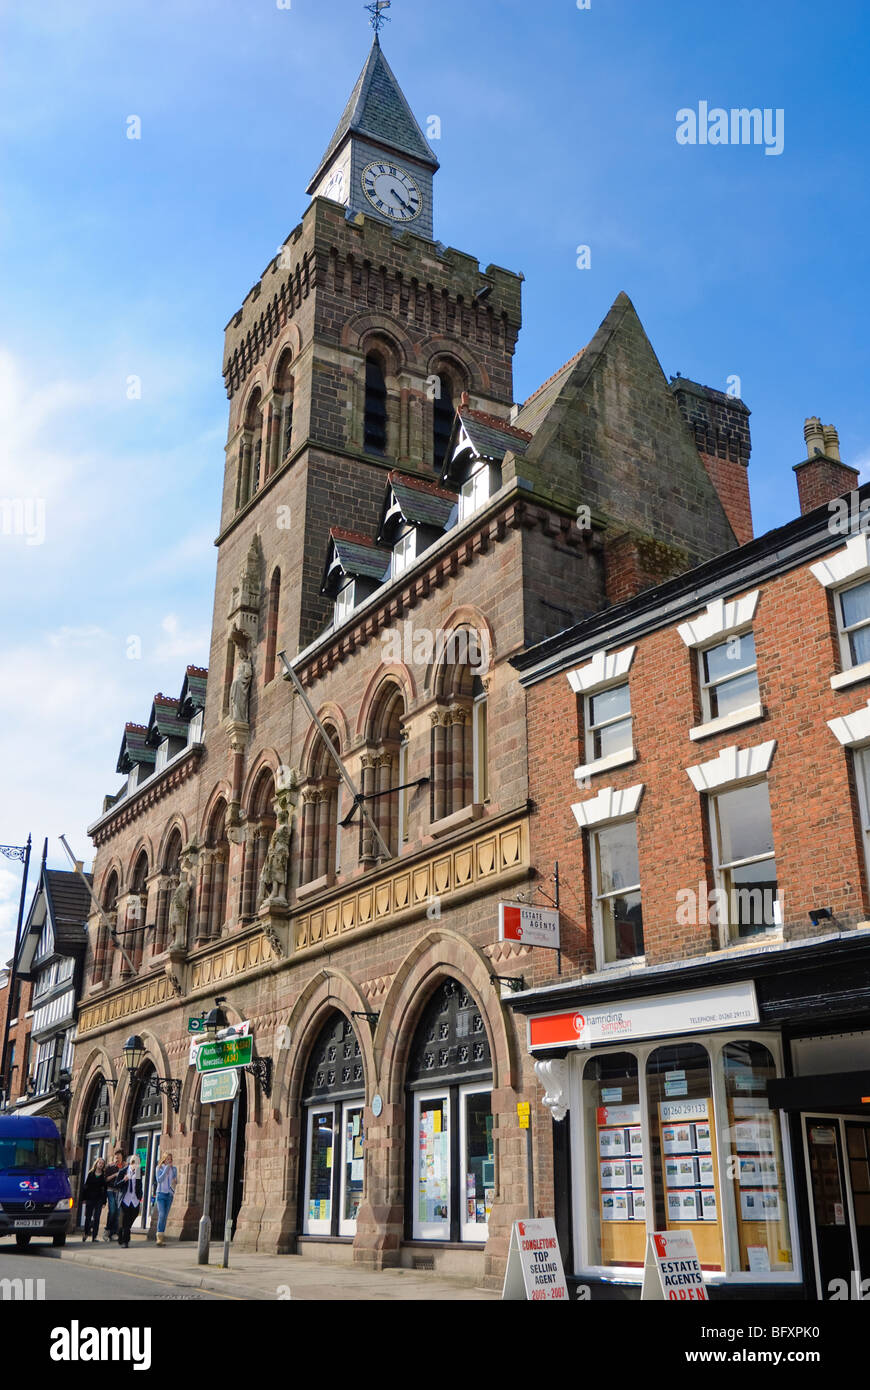 Grand bâtiment dans une petite ville anglaise : Congleton mairie, Cheshire. Cliquez pour plus de détails. Banque D'Images